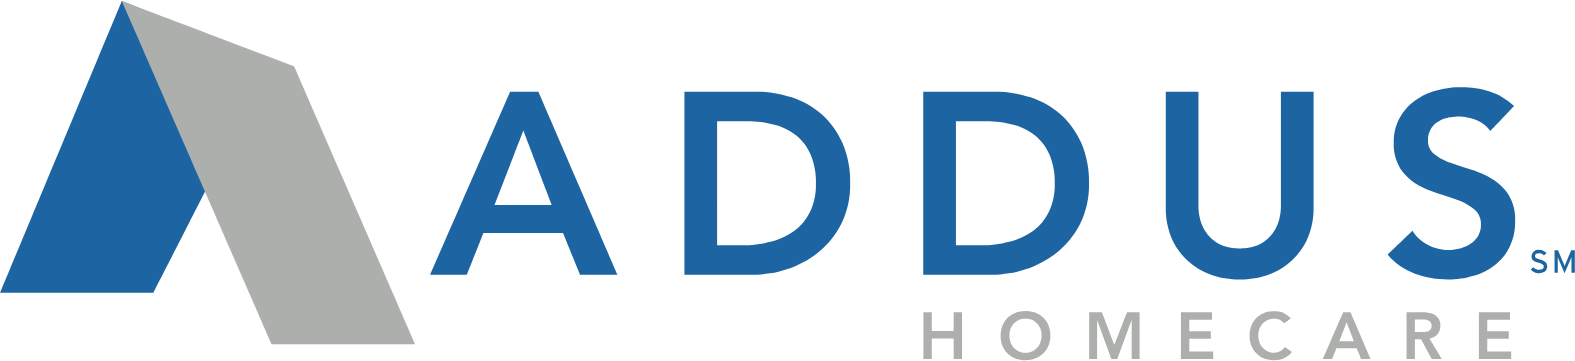 
Addus HomeCare logo large (transparent PNG)